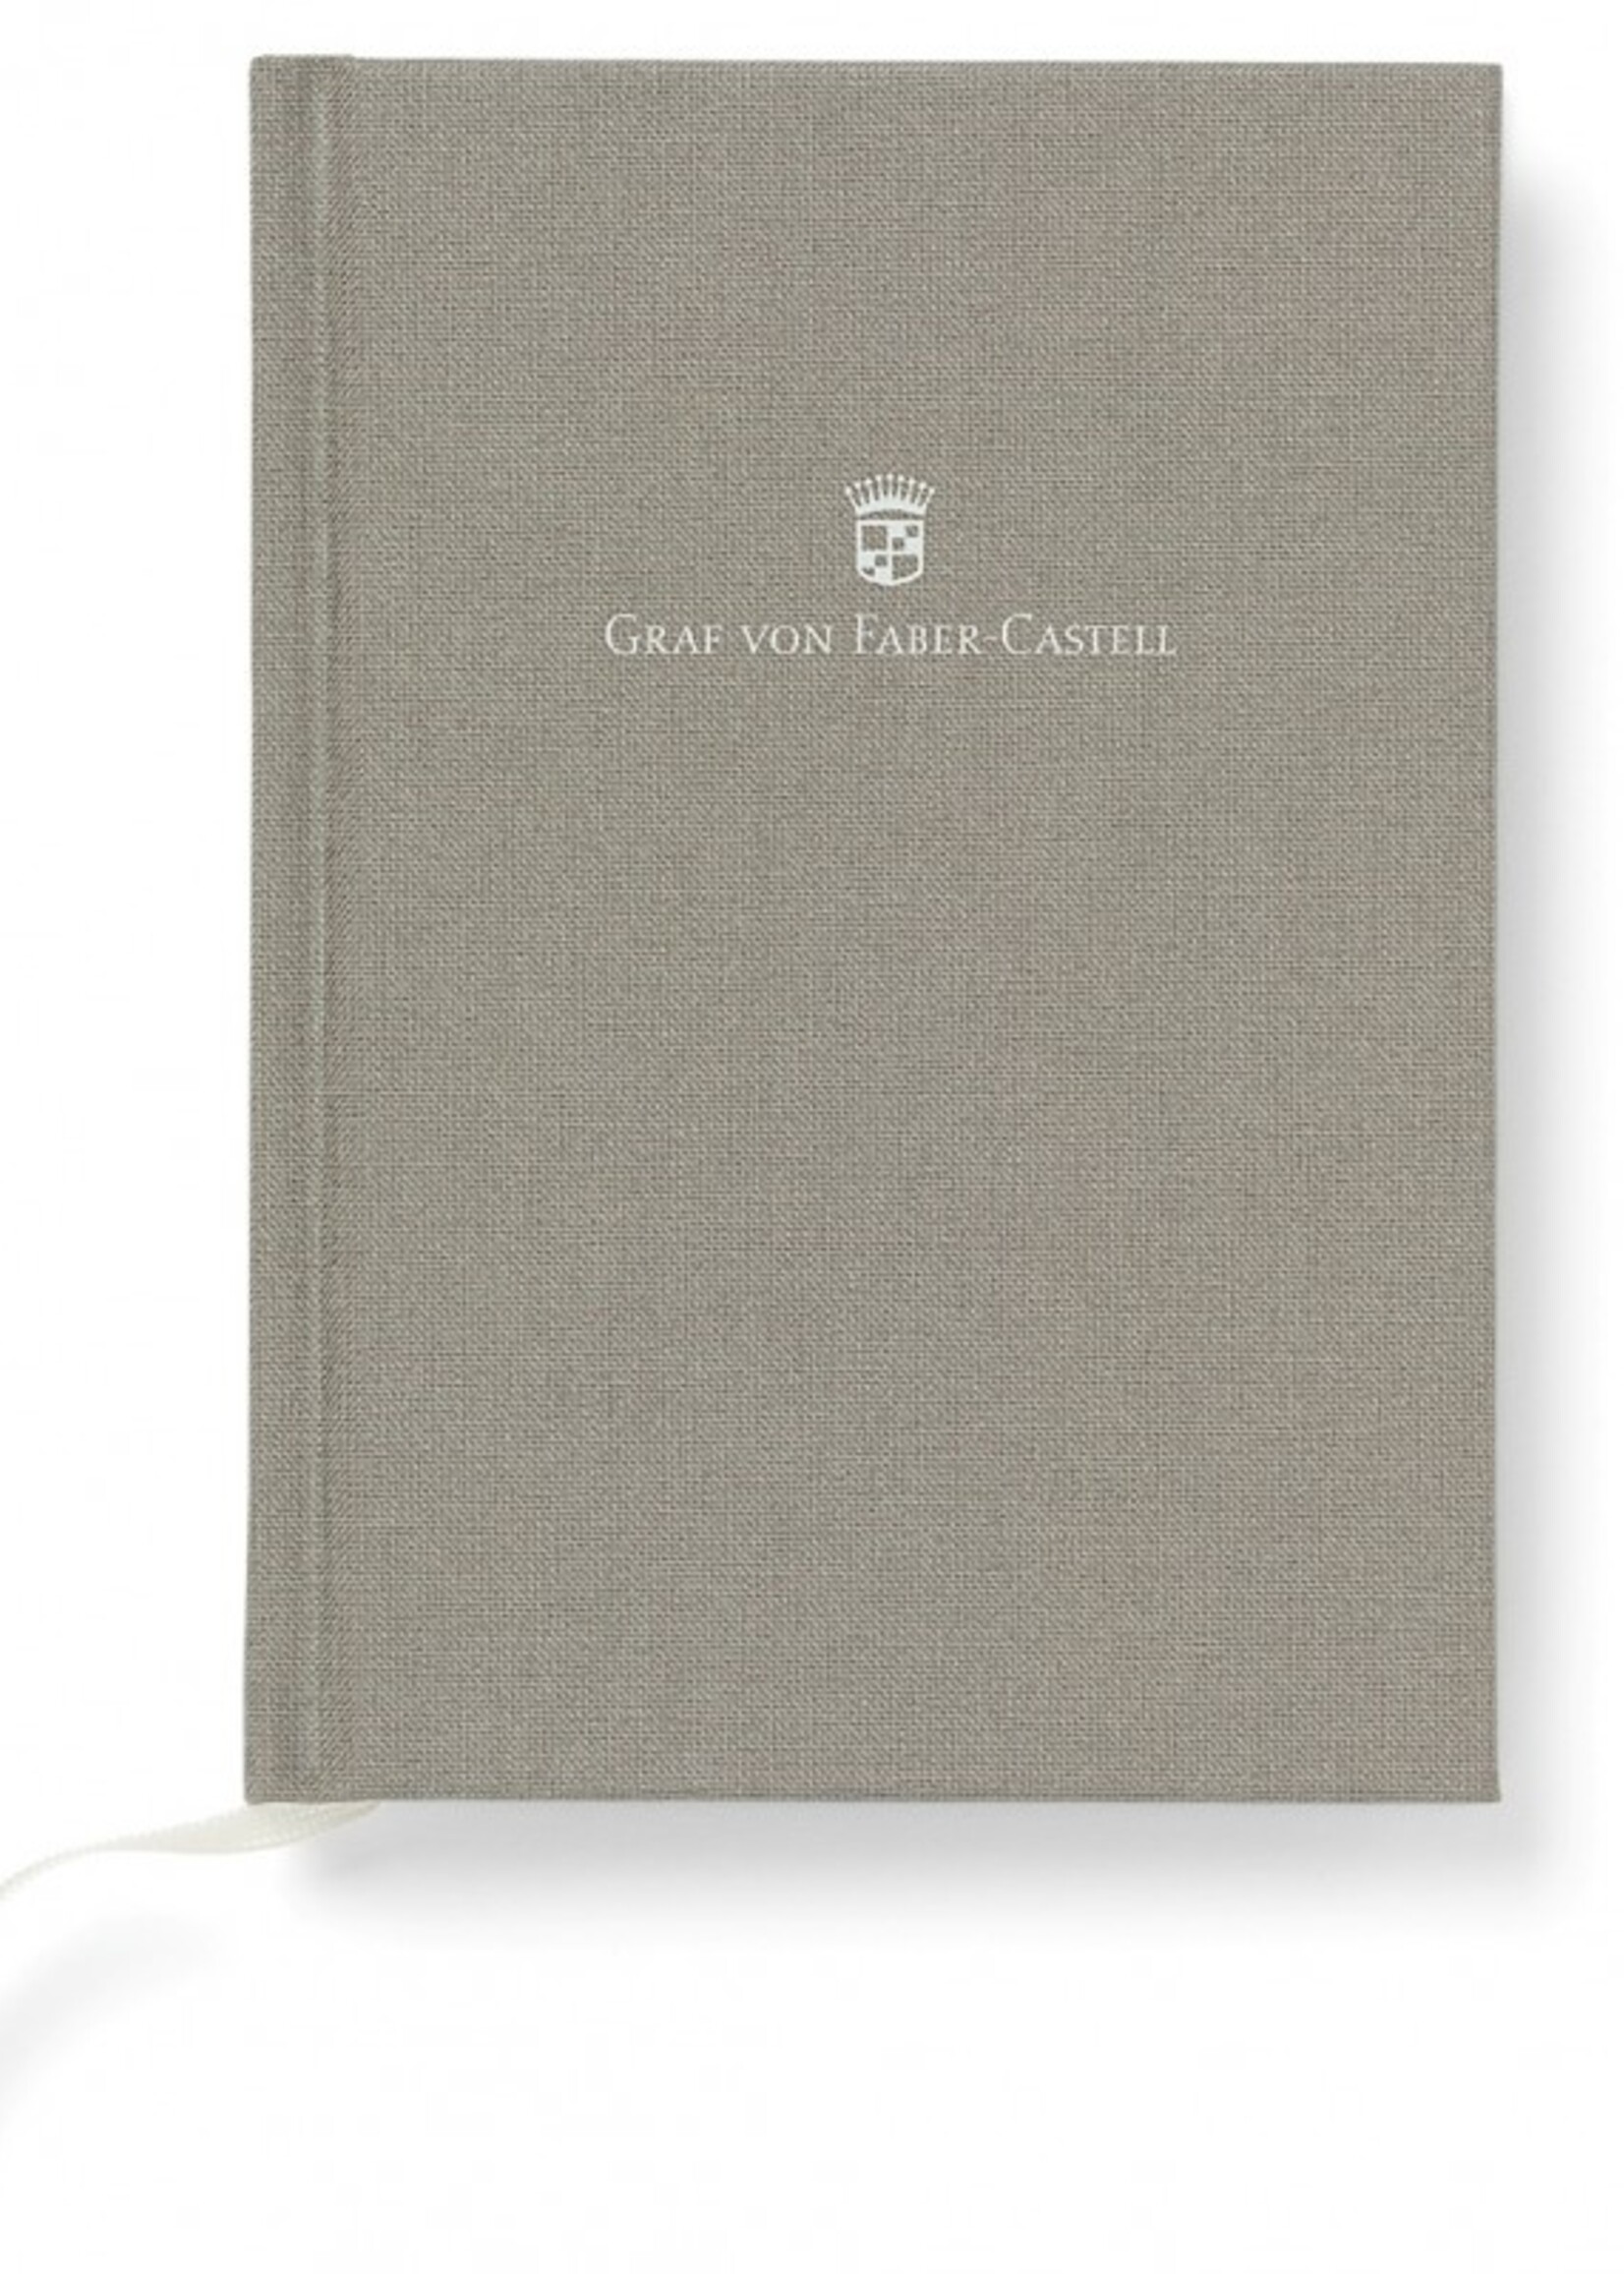 Graf von Faber-Castell Buch Gvfc Mit